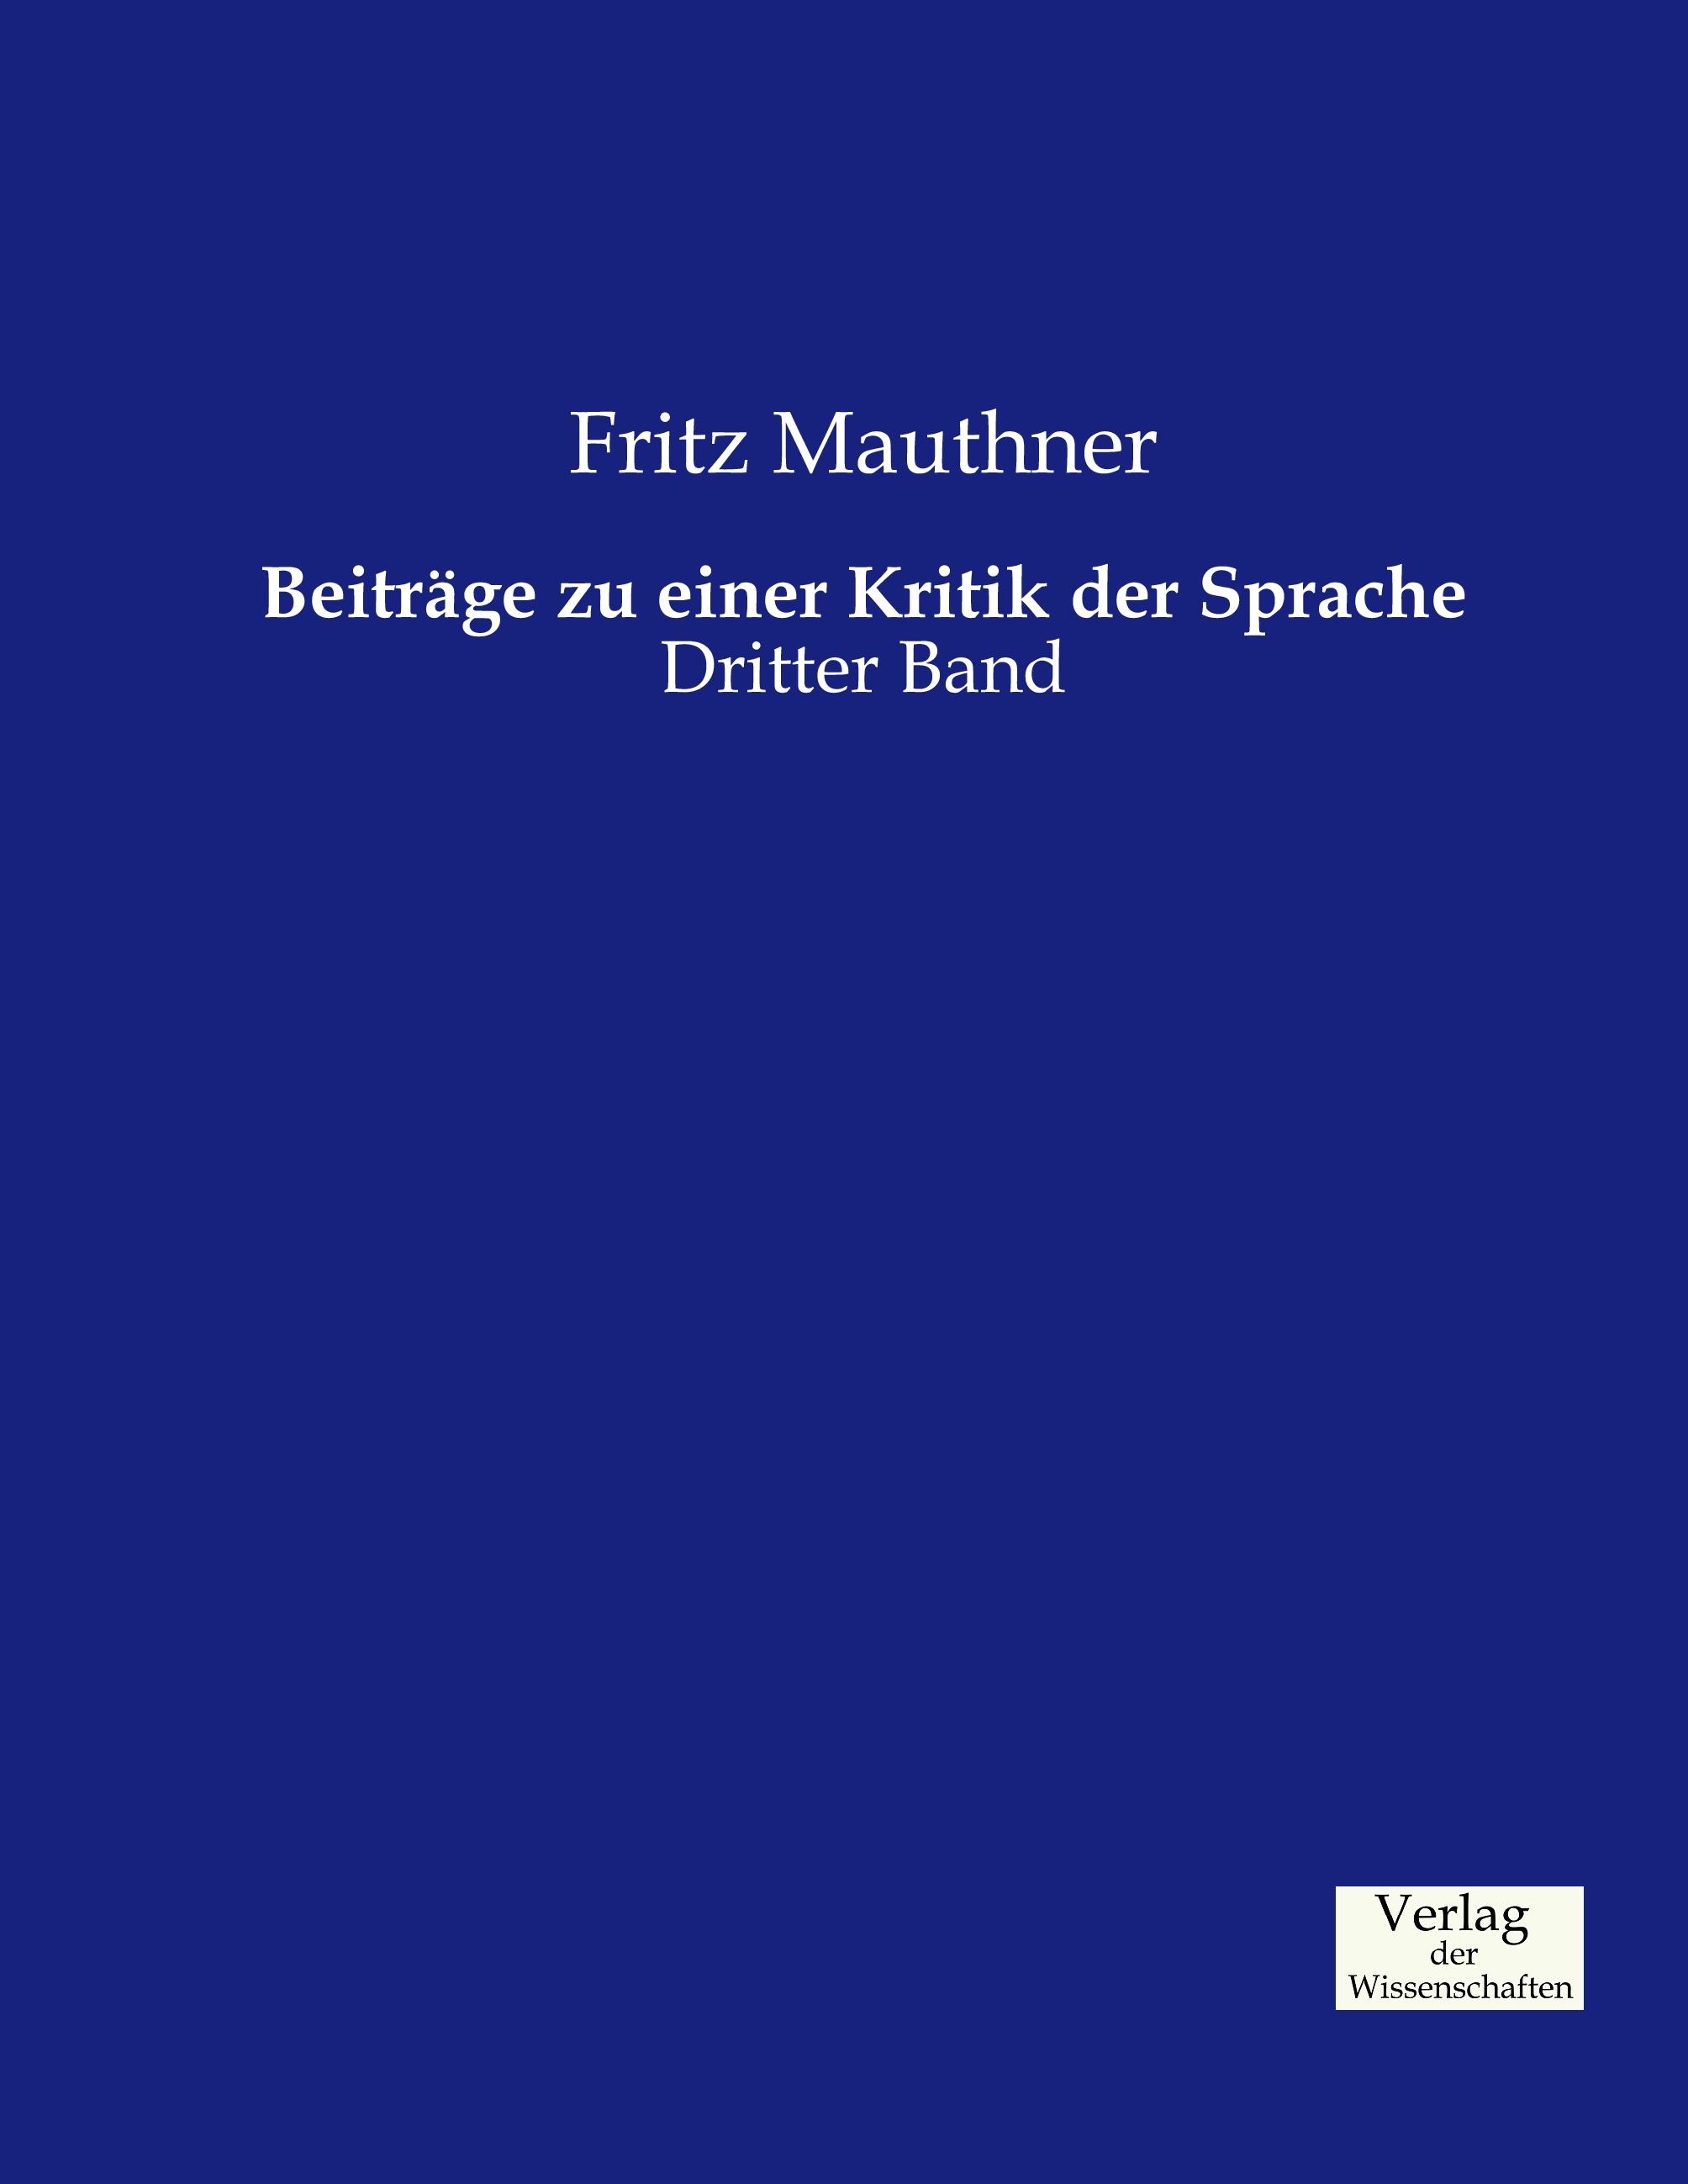 Beiträge zu einer Kritik der Sprache / Dritter Band / Fritz Mauthner / Taschenbuch / Paperback / 692 S. / Deutsch / 2019 / Vero Verlag / EAN 9783957005854 - Mauthner, Fritz